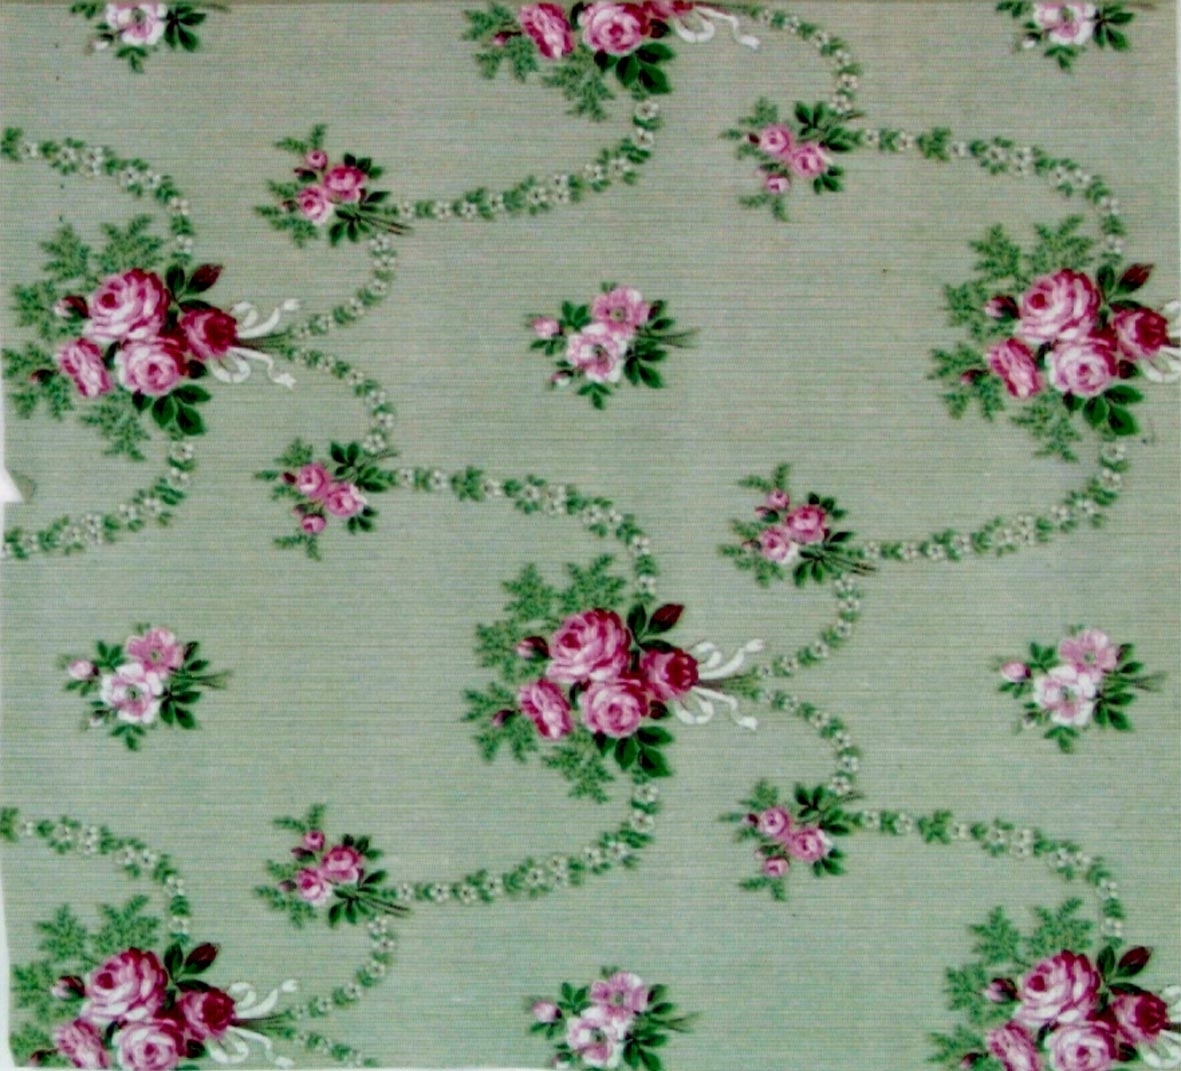 Rosenbuketter och girlanger i diagonalupprepning på en bakgrund dekorerad med ett litet vitt randmönster. Tryck i vinrött, vitt och grönt samt i två rosa nyanser. Ljusgrönt genomfärgat papper.